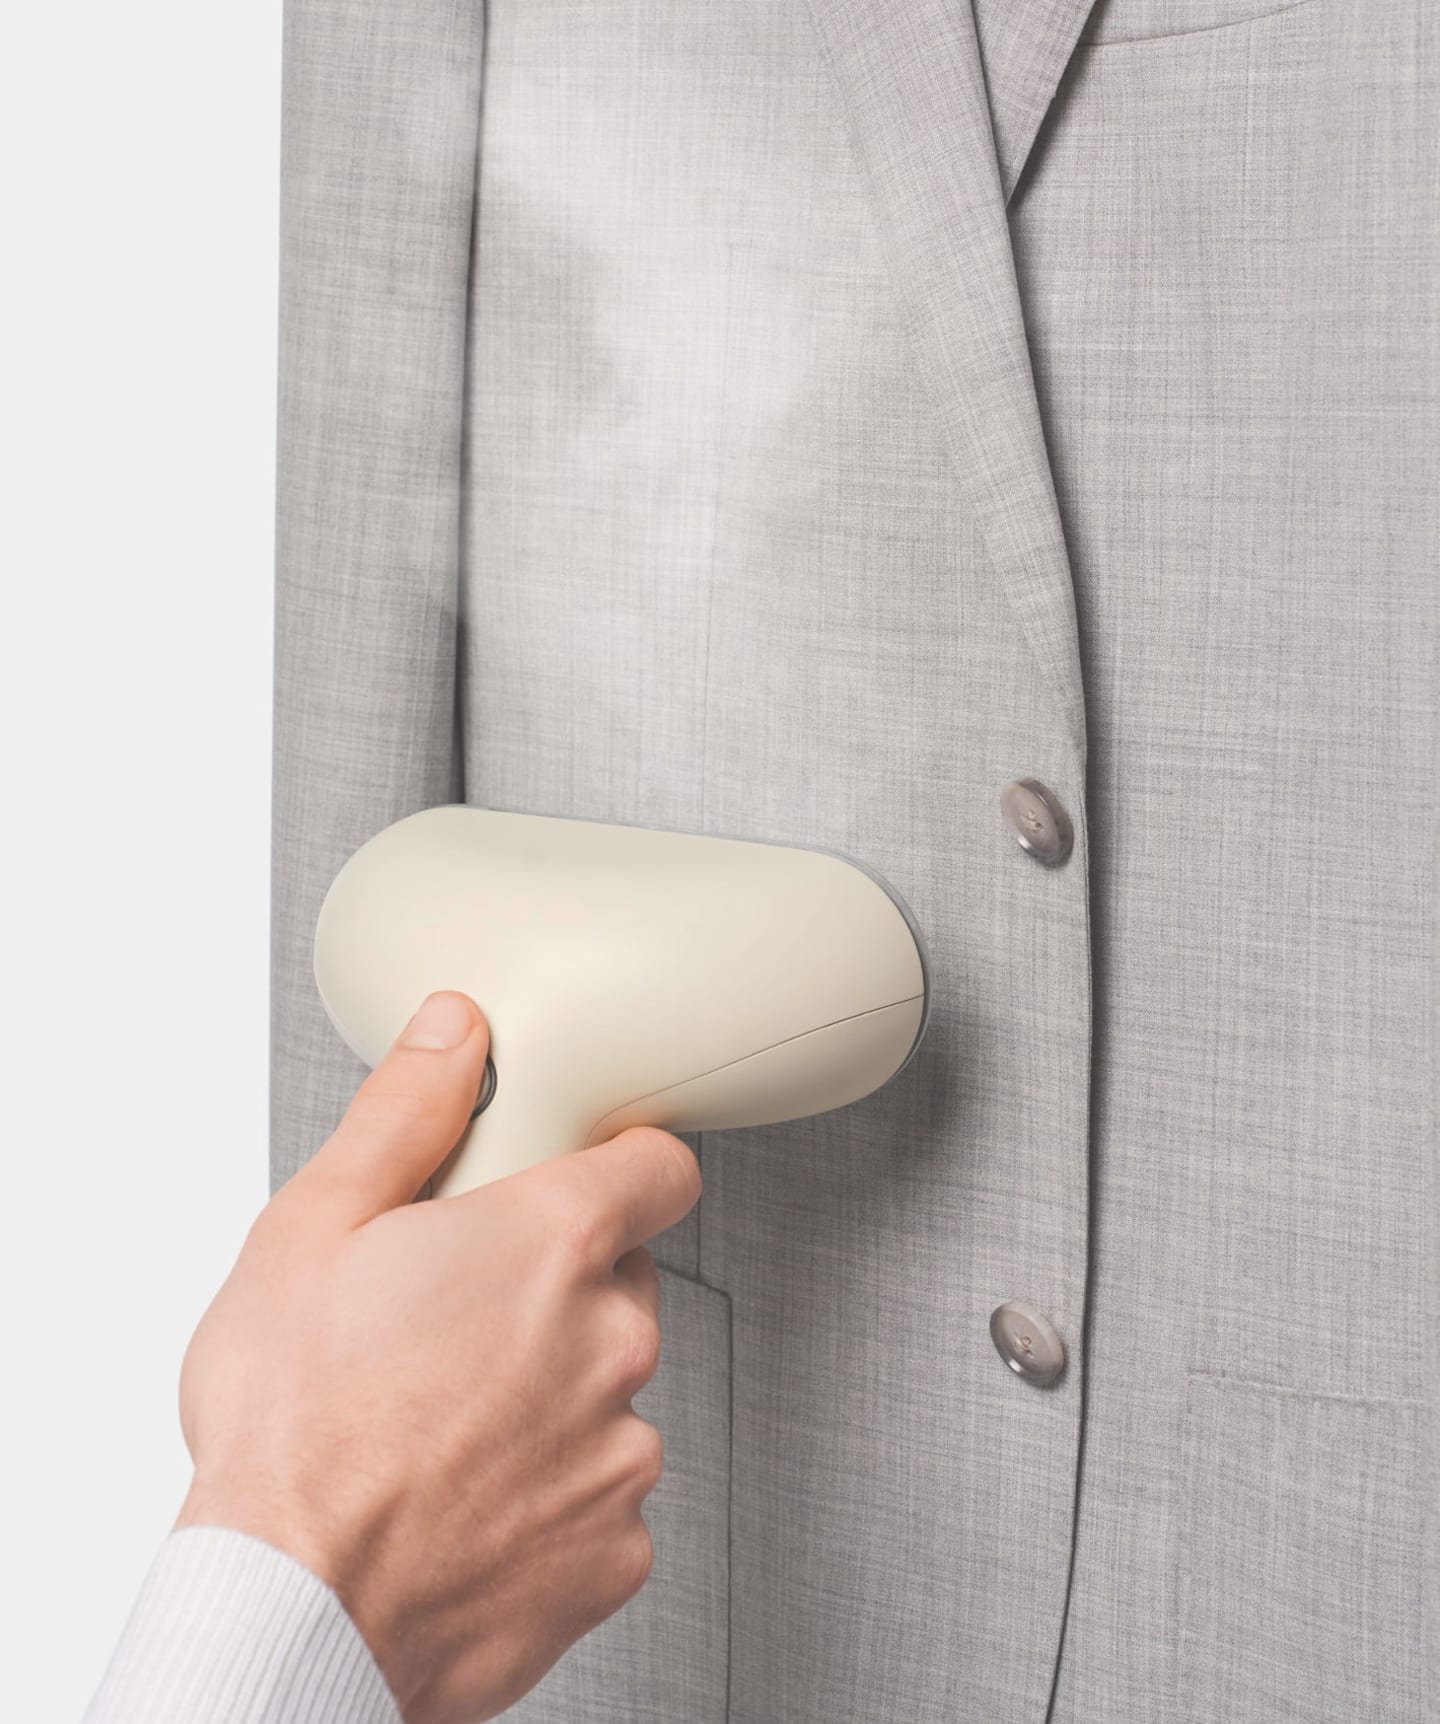 Imagen detallada de botones superpuestos en la manga de un blazer de traje